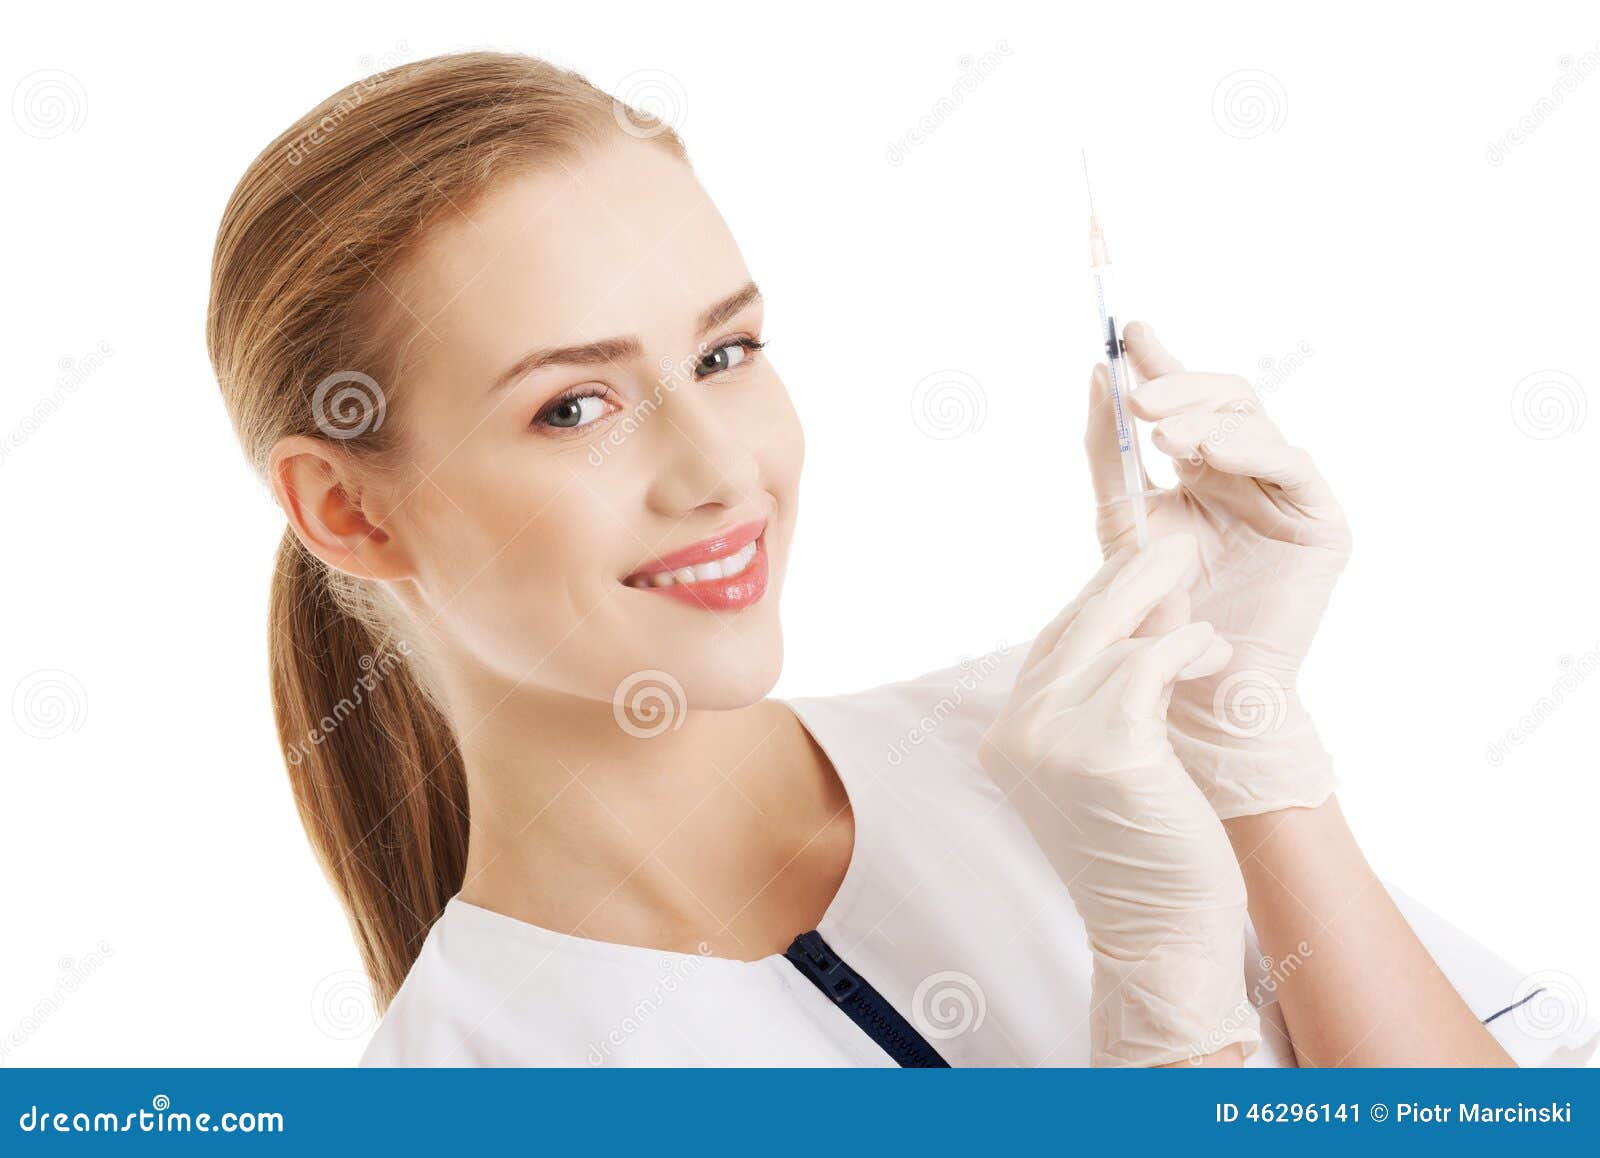 Dentist Holding A Syringe Stock Image Image Of Hand 46296141